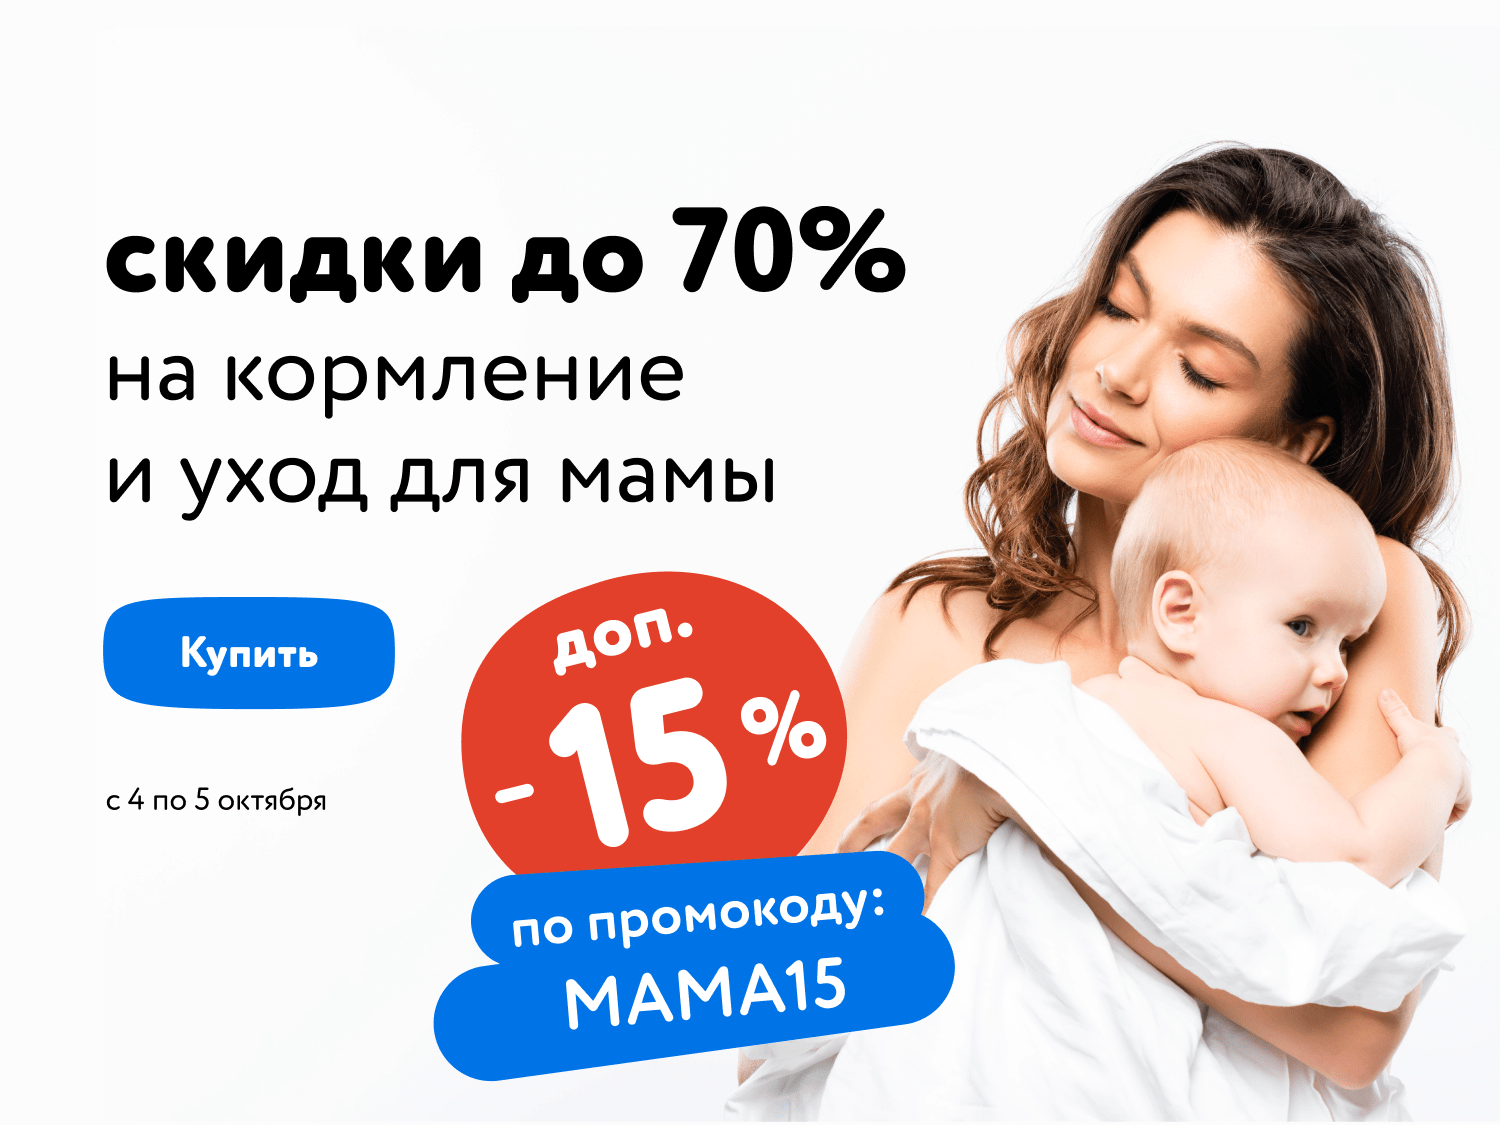 -15% на товары для кормления и ухода для мамы по промокоду